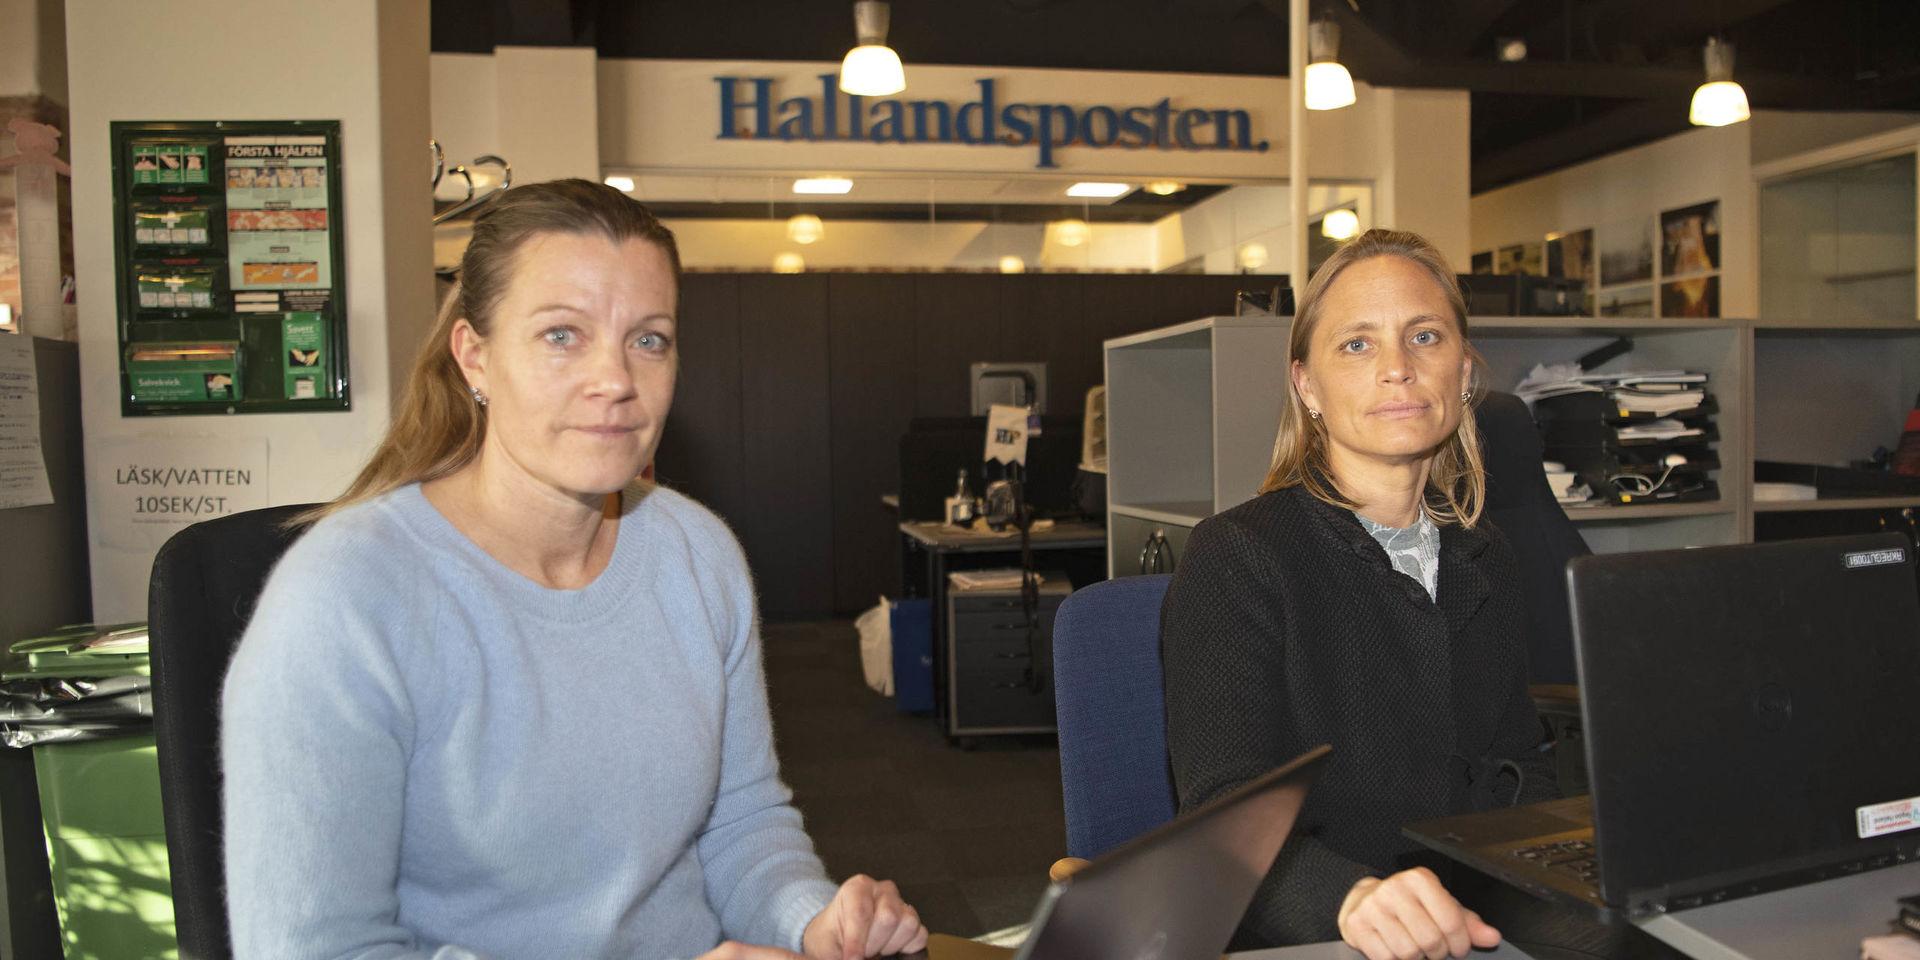 Smittskyddsläkare Maria Löfgren svarade på läsarnas frågor via Hallandspostens livechatt.